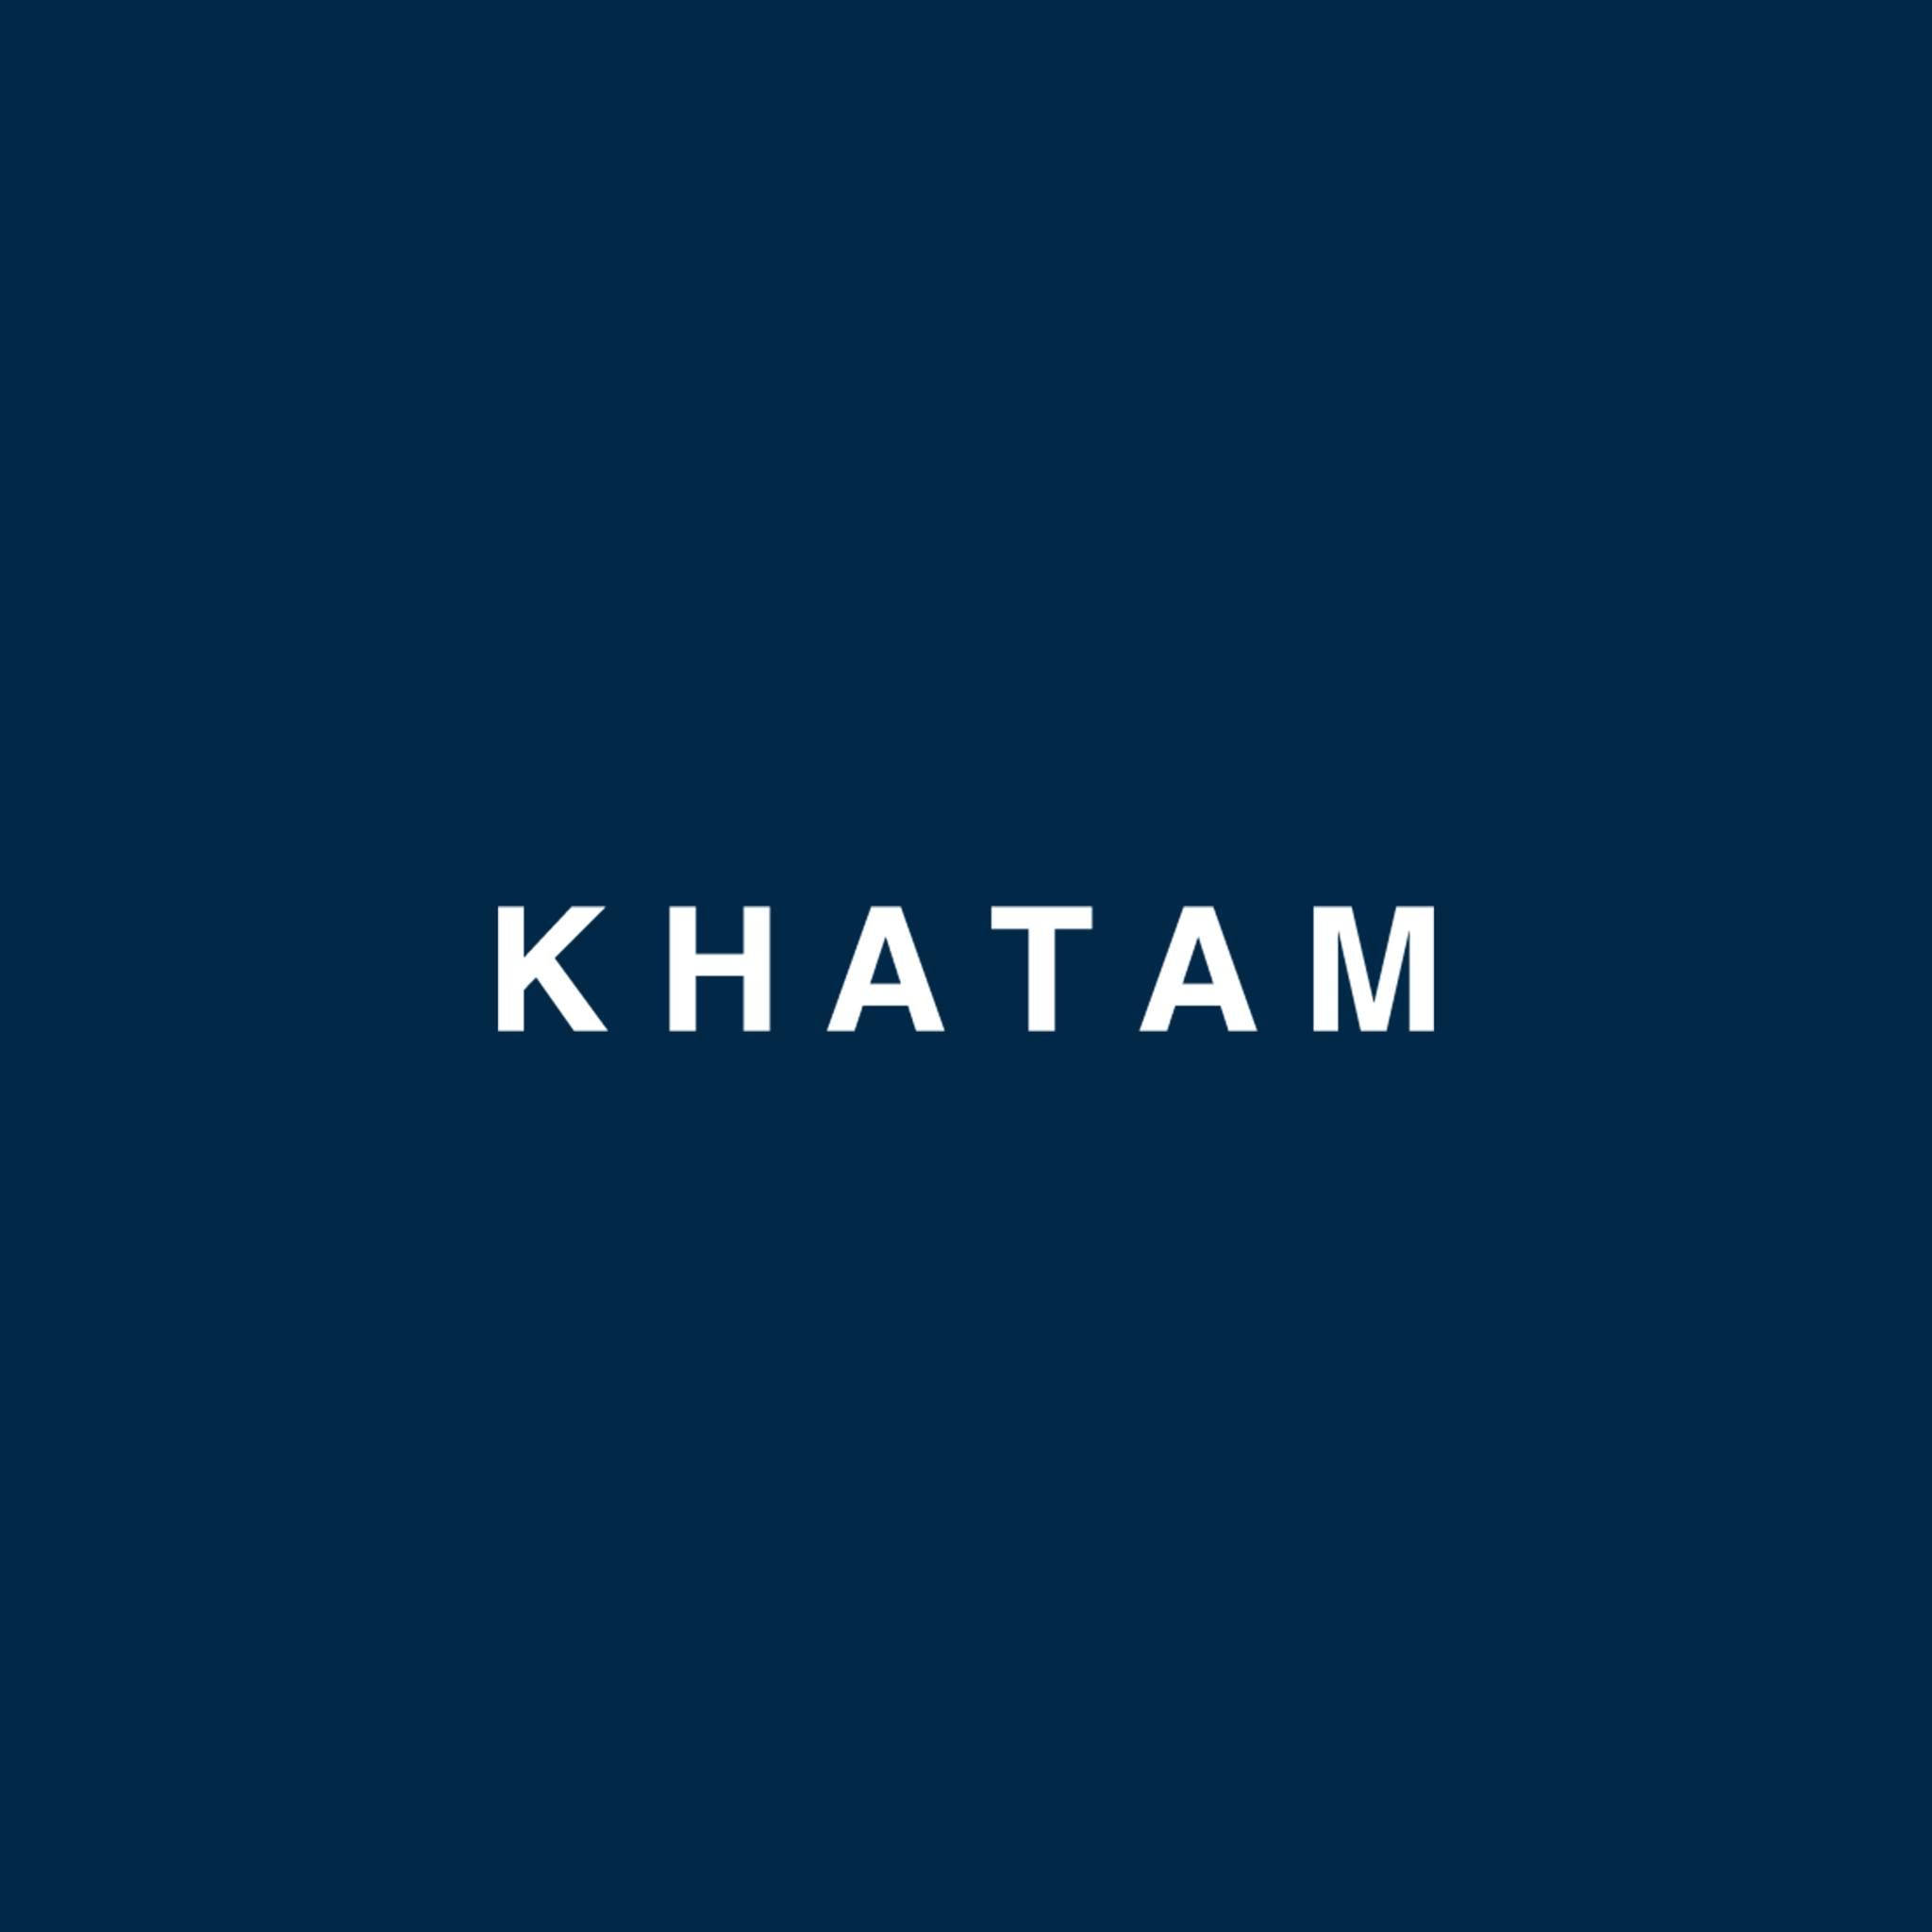 KHATAM